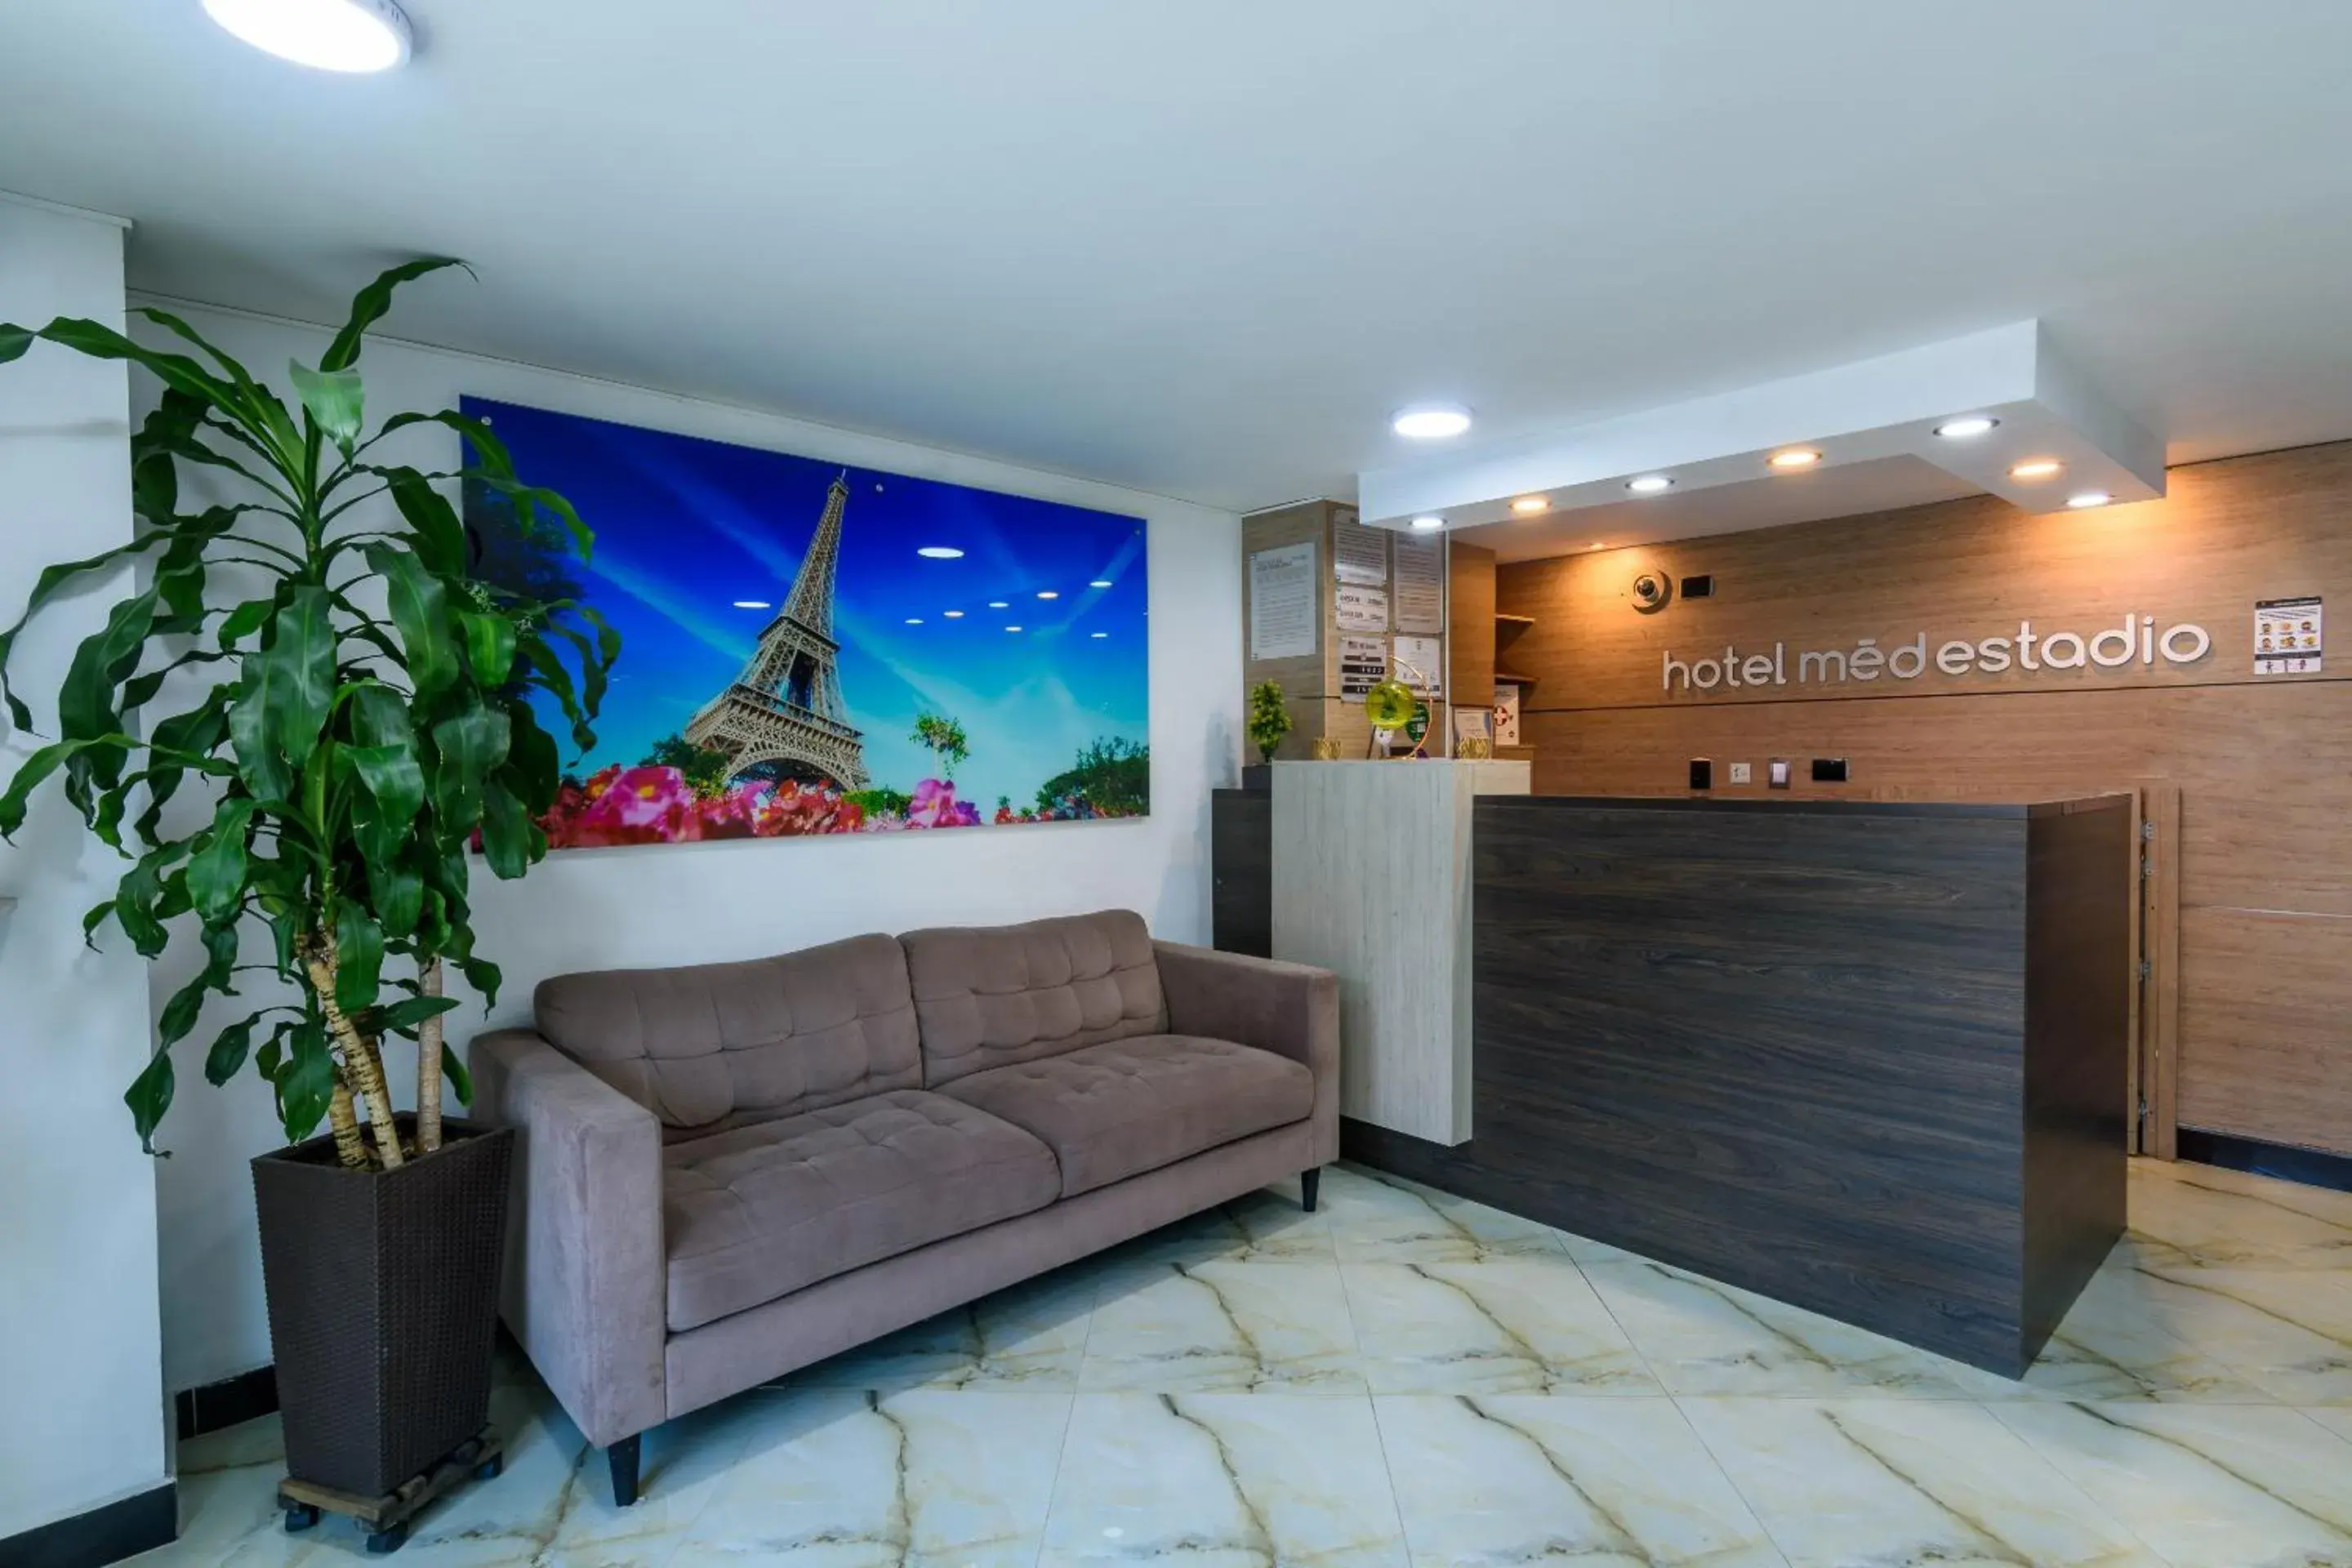 Lobby or reception, Lobby/Reception in Hotel Med Estadio